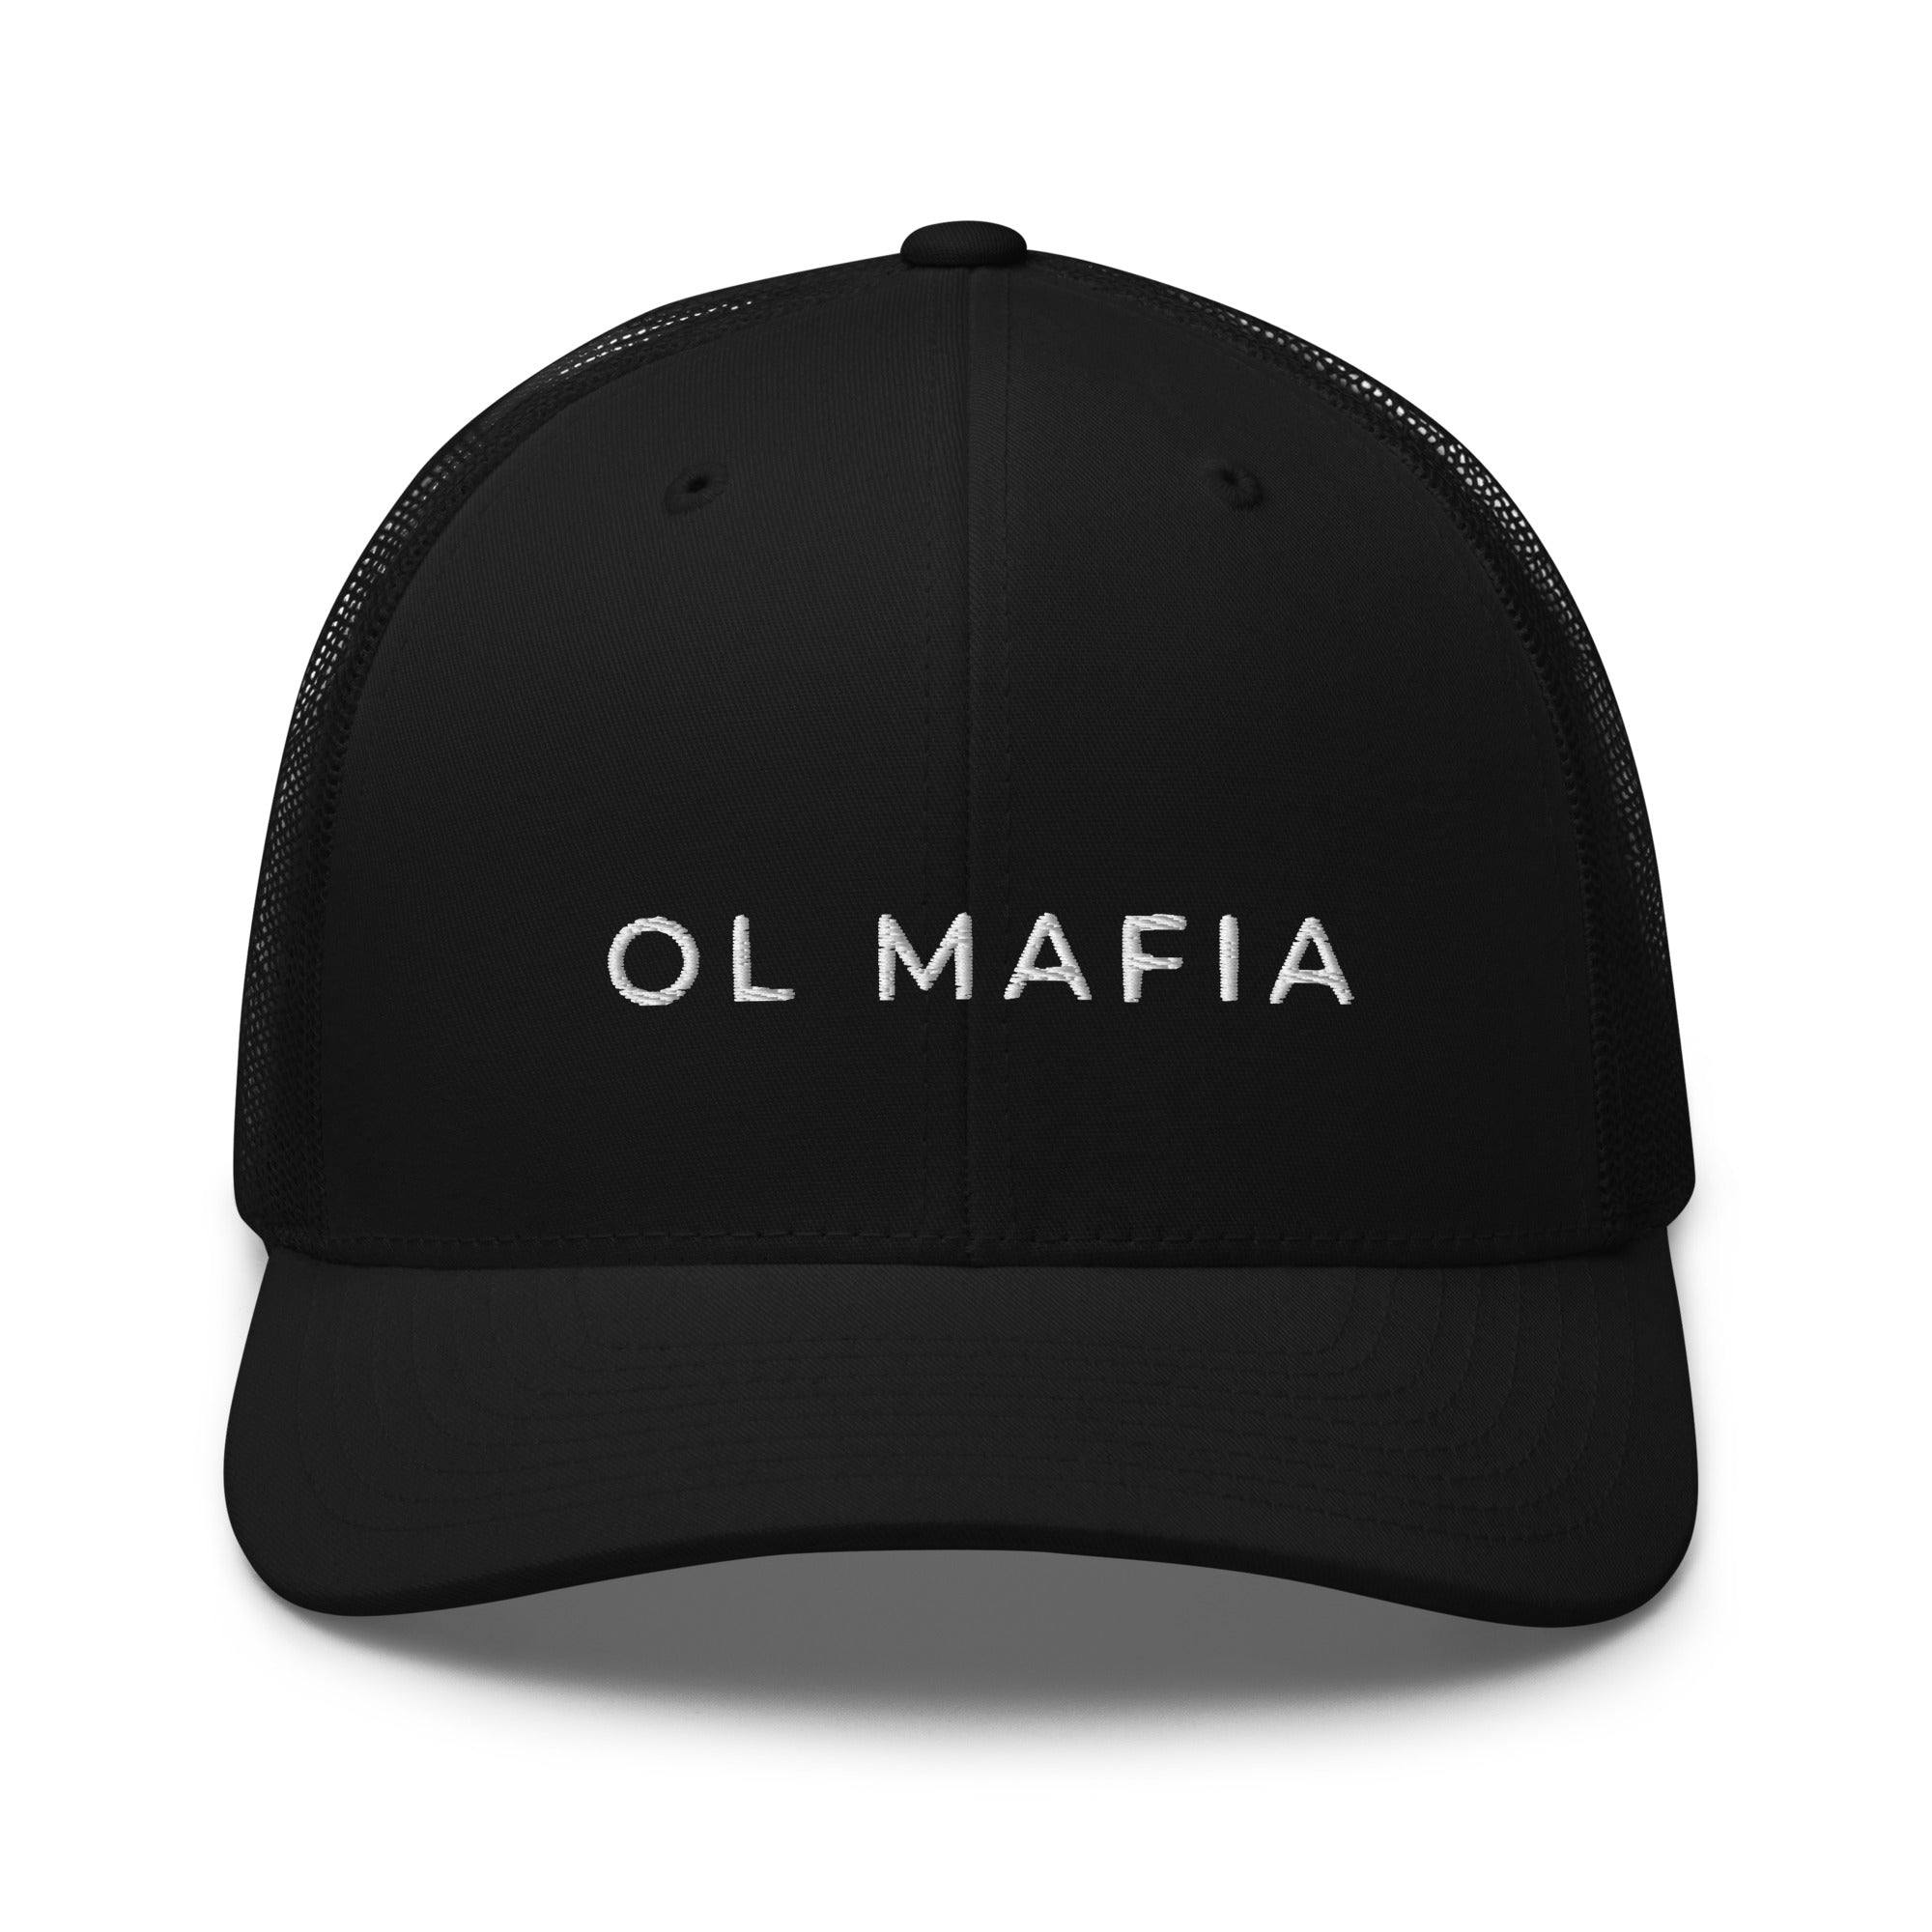 OL Mafia Trucker